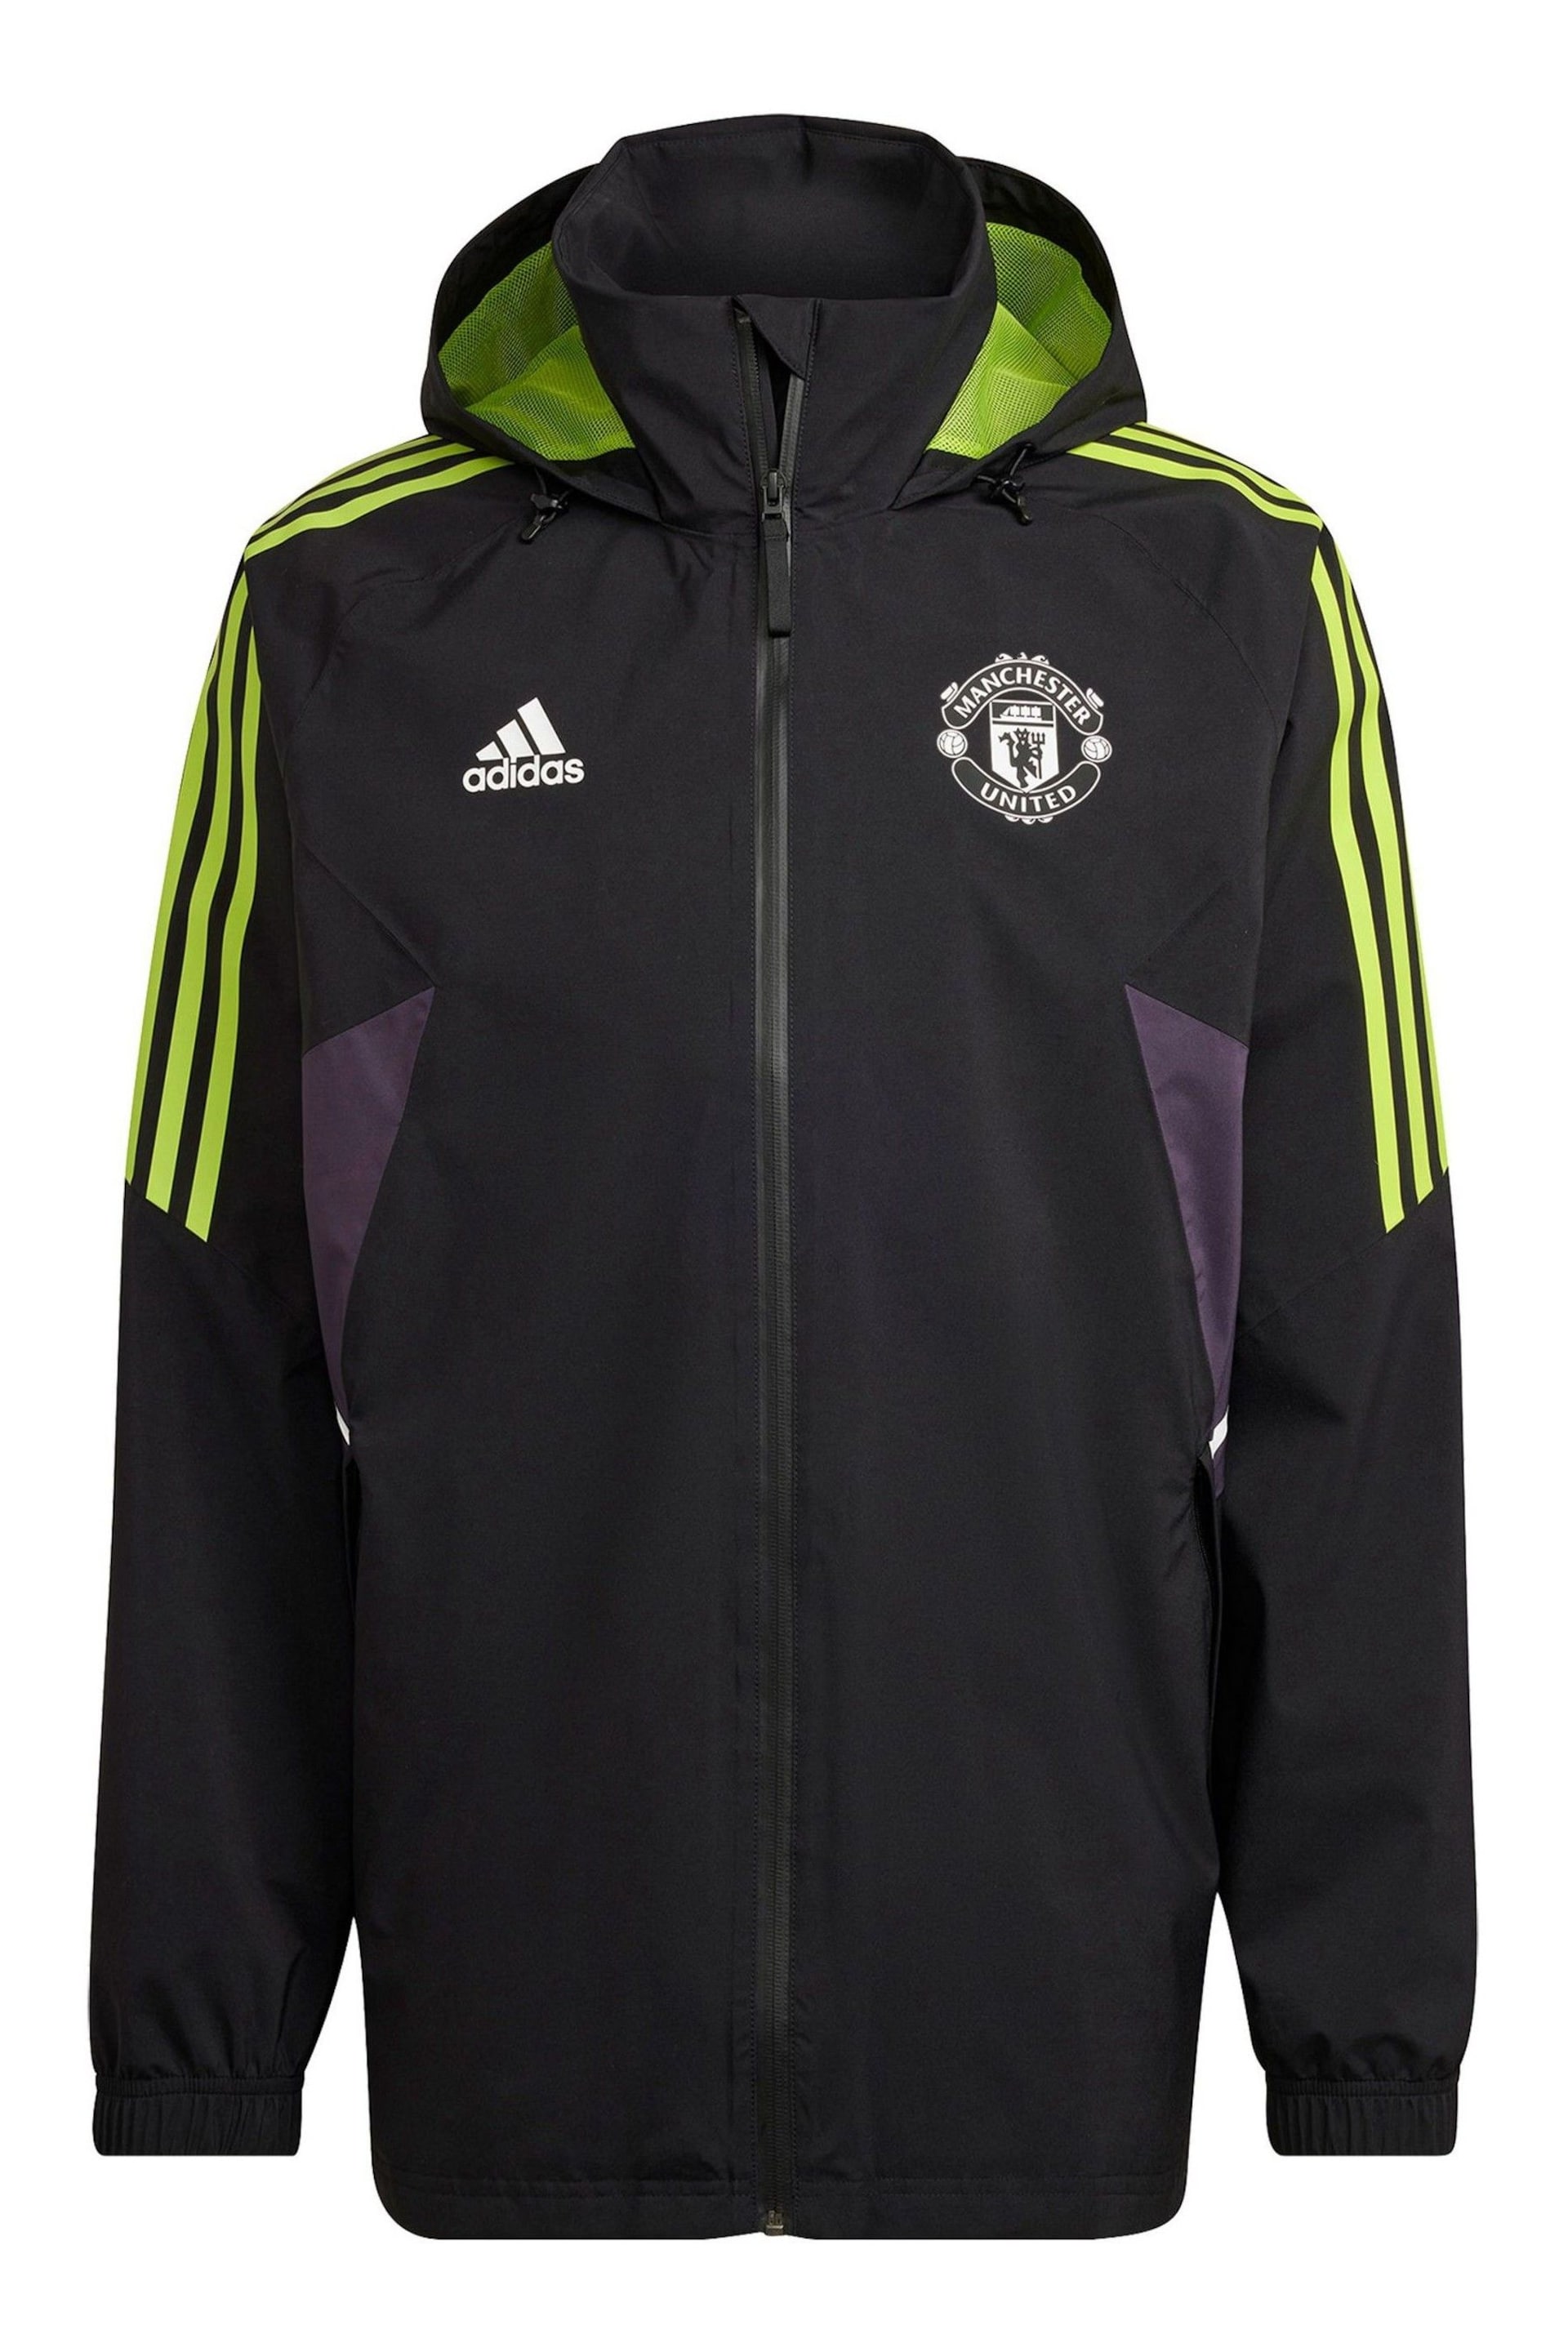 adidas Black Chrome Manchester United European Training Rain Jacket - Image 1 of 1